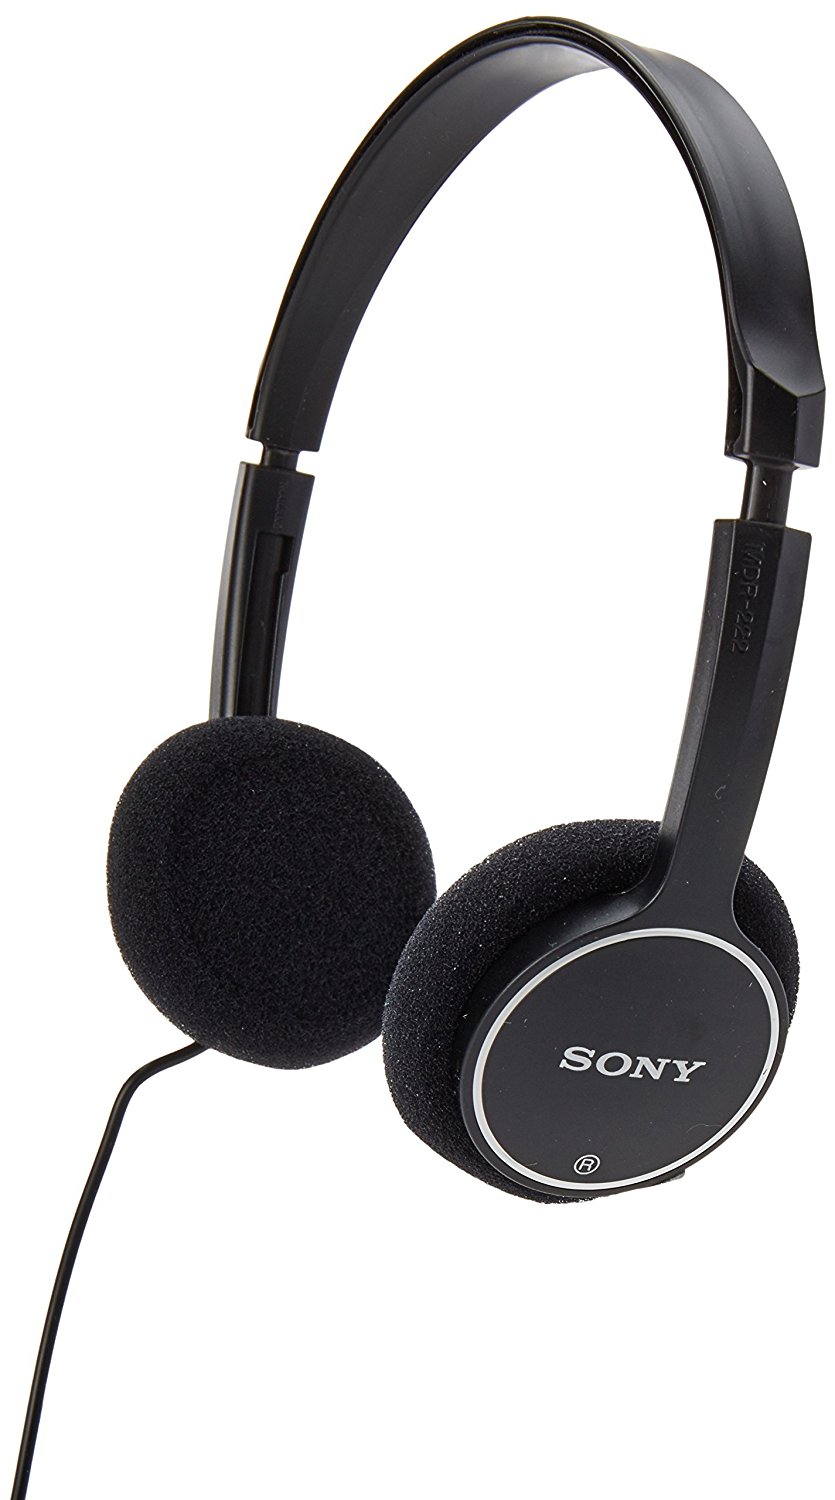 6. Sony Childrens Headphones